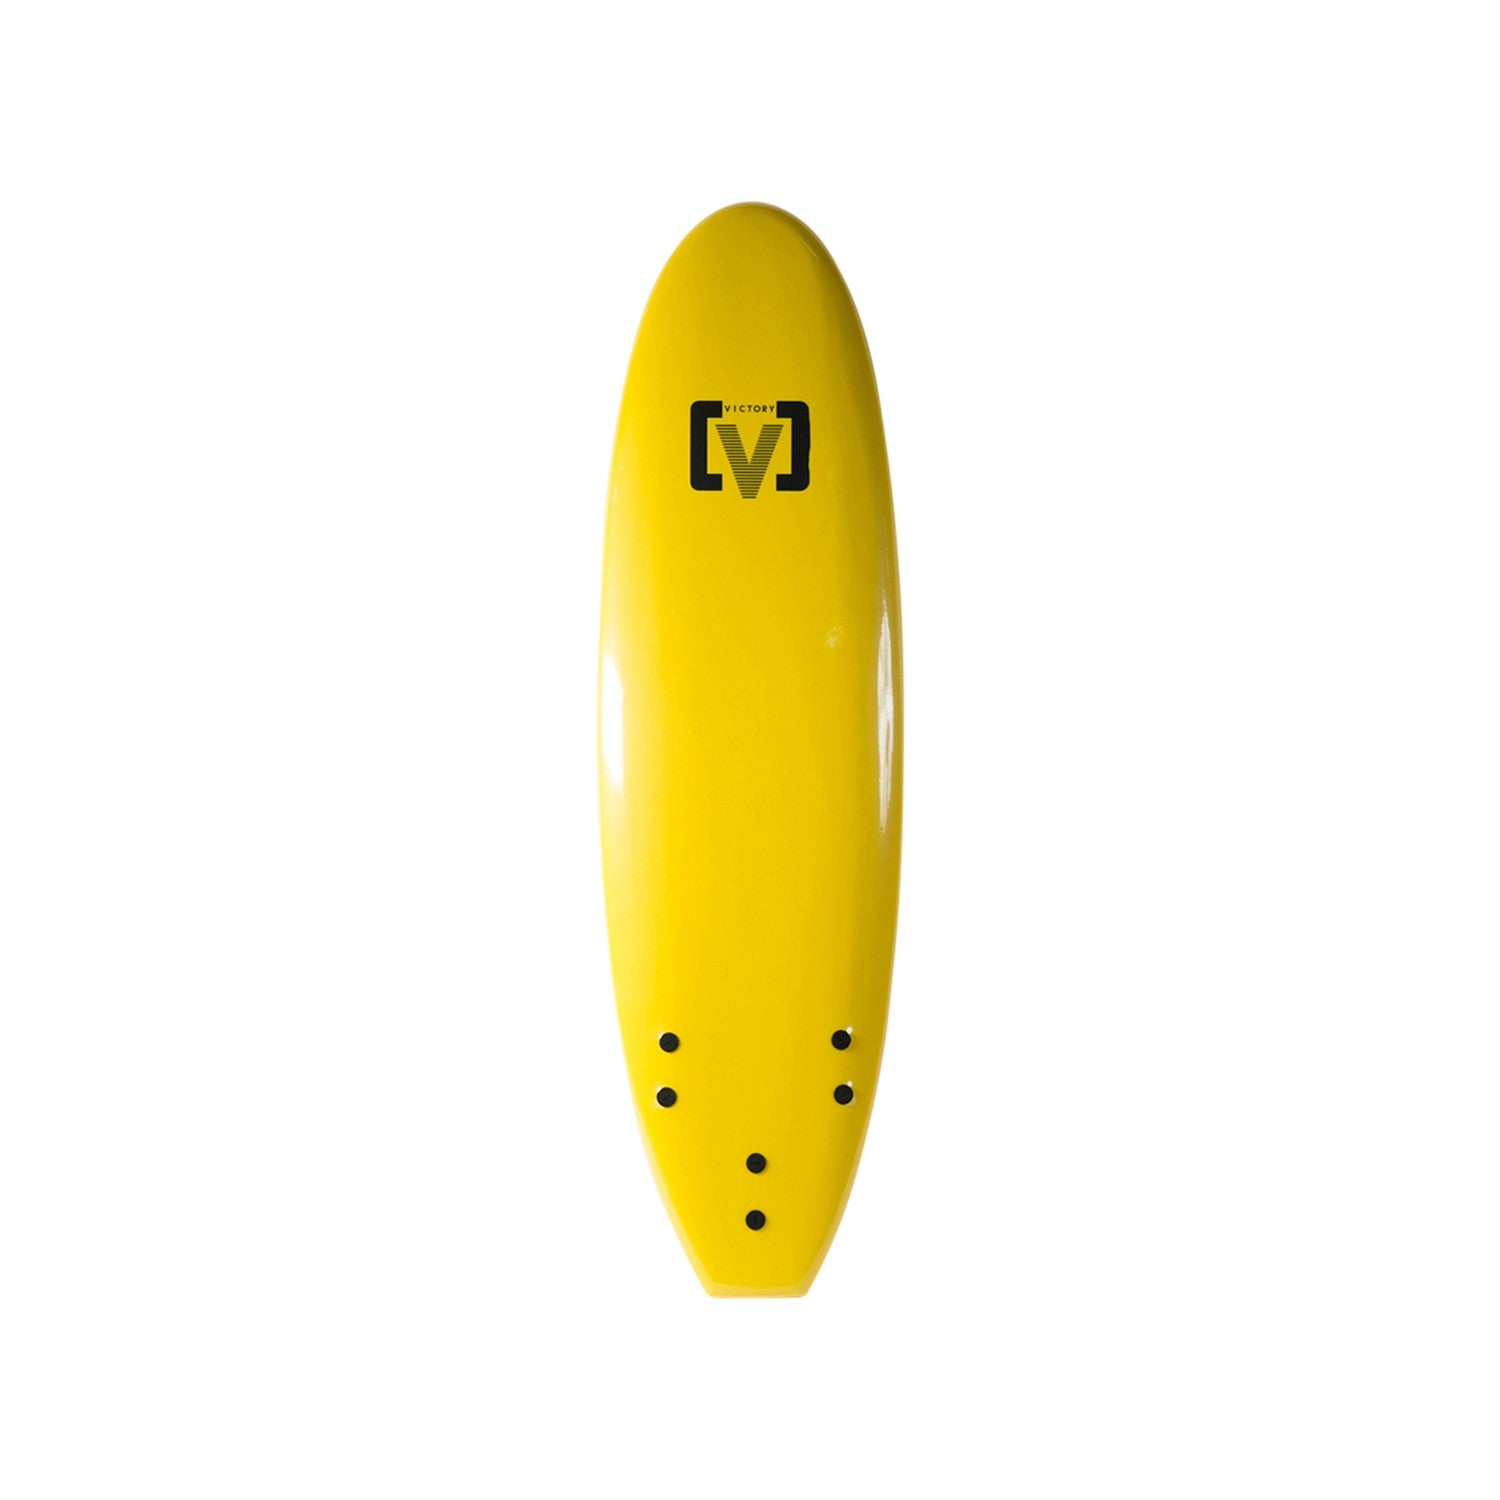 VICTORY - EPS Softboard - Foam Surfboard - 6'0 - Yellow